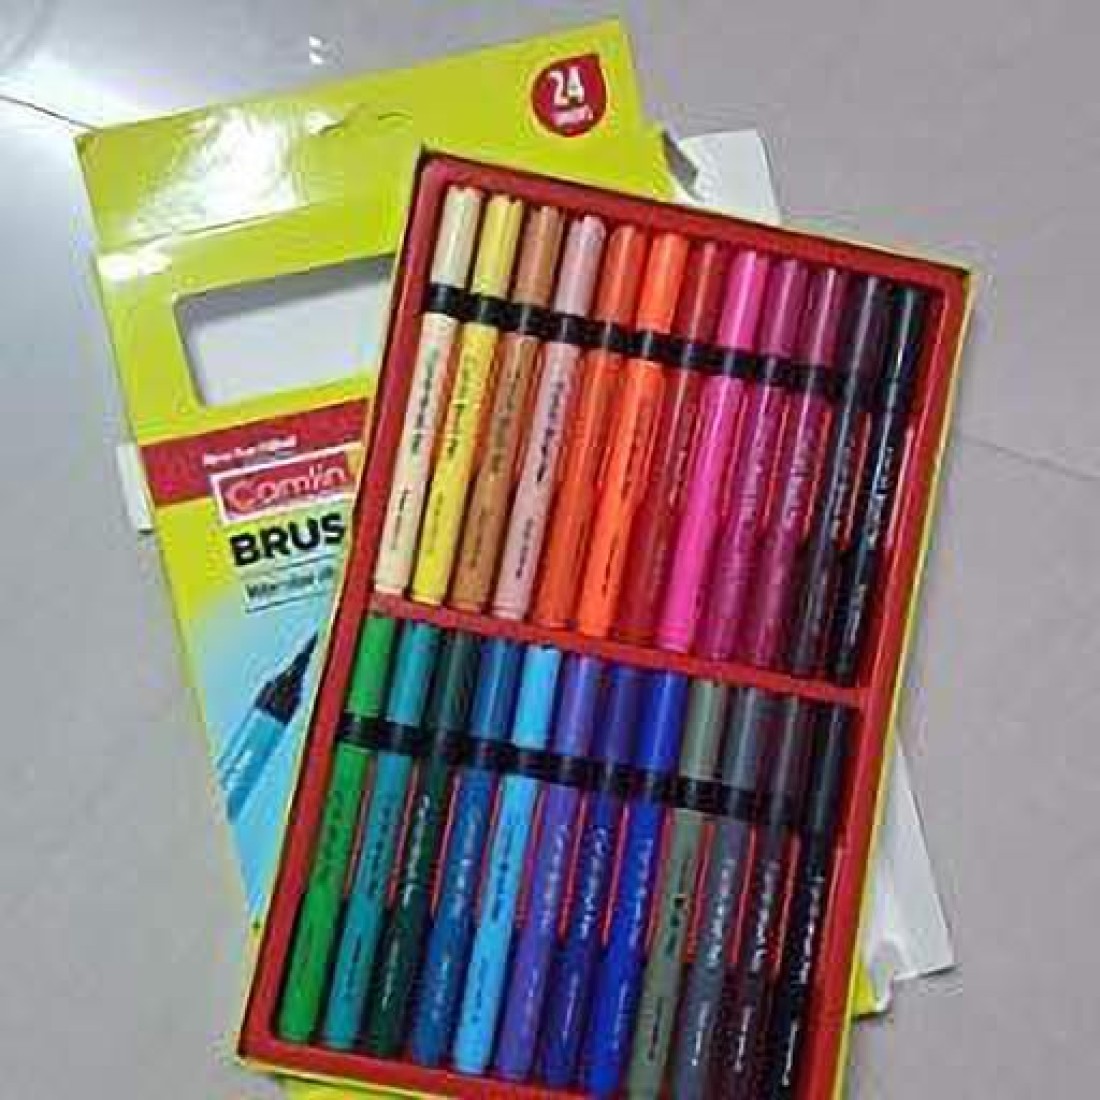 PRAYOSHA ENTERPRISE 48 Color Water Color Nib Sketch Pens 